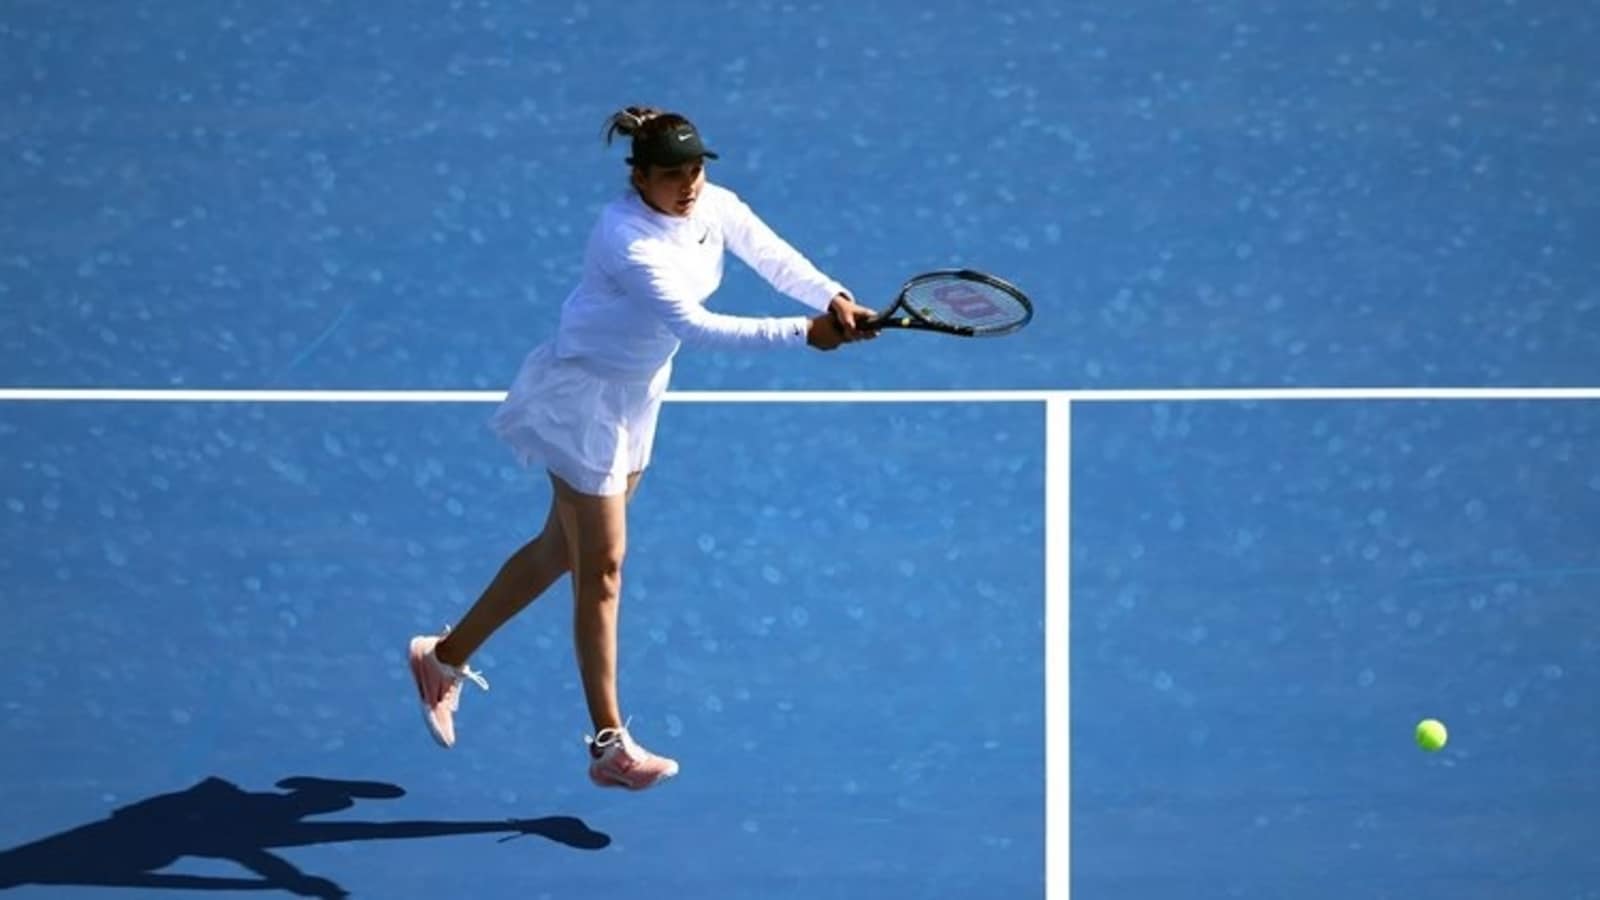 سانيا ميرزا ​​، آنا دانيلينا تبحر إلى الدور الثاني من بطولة أستراليا المفتوحة  أخبار التنس